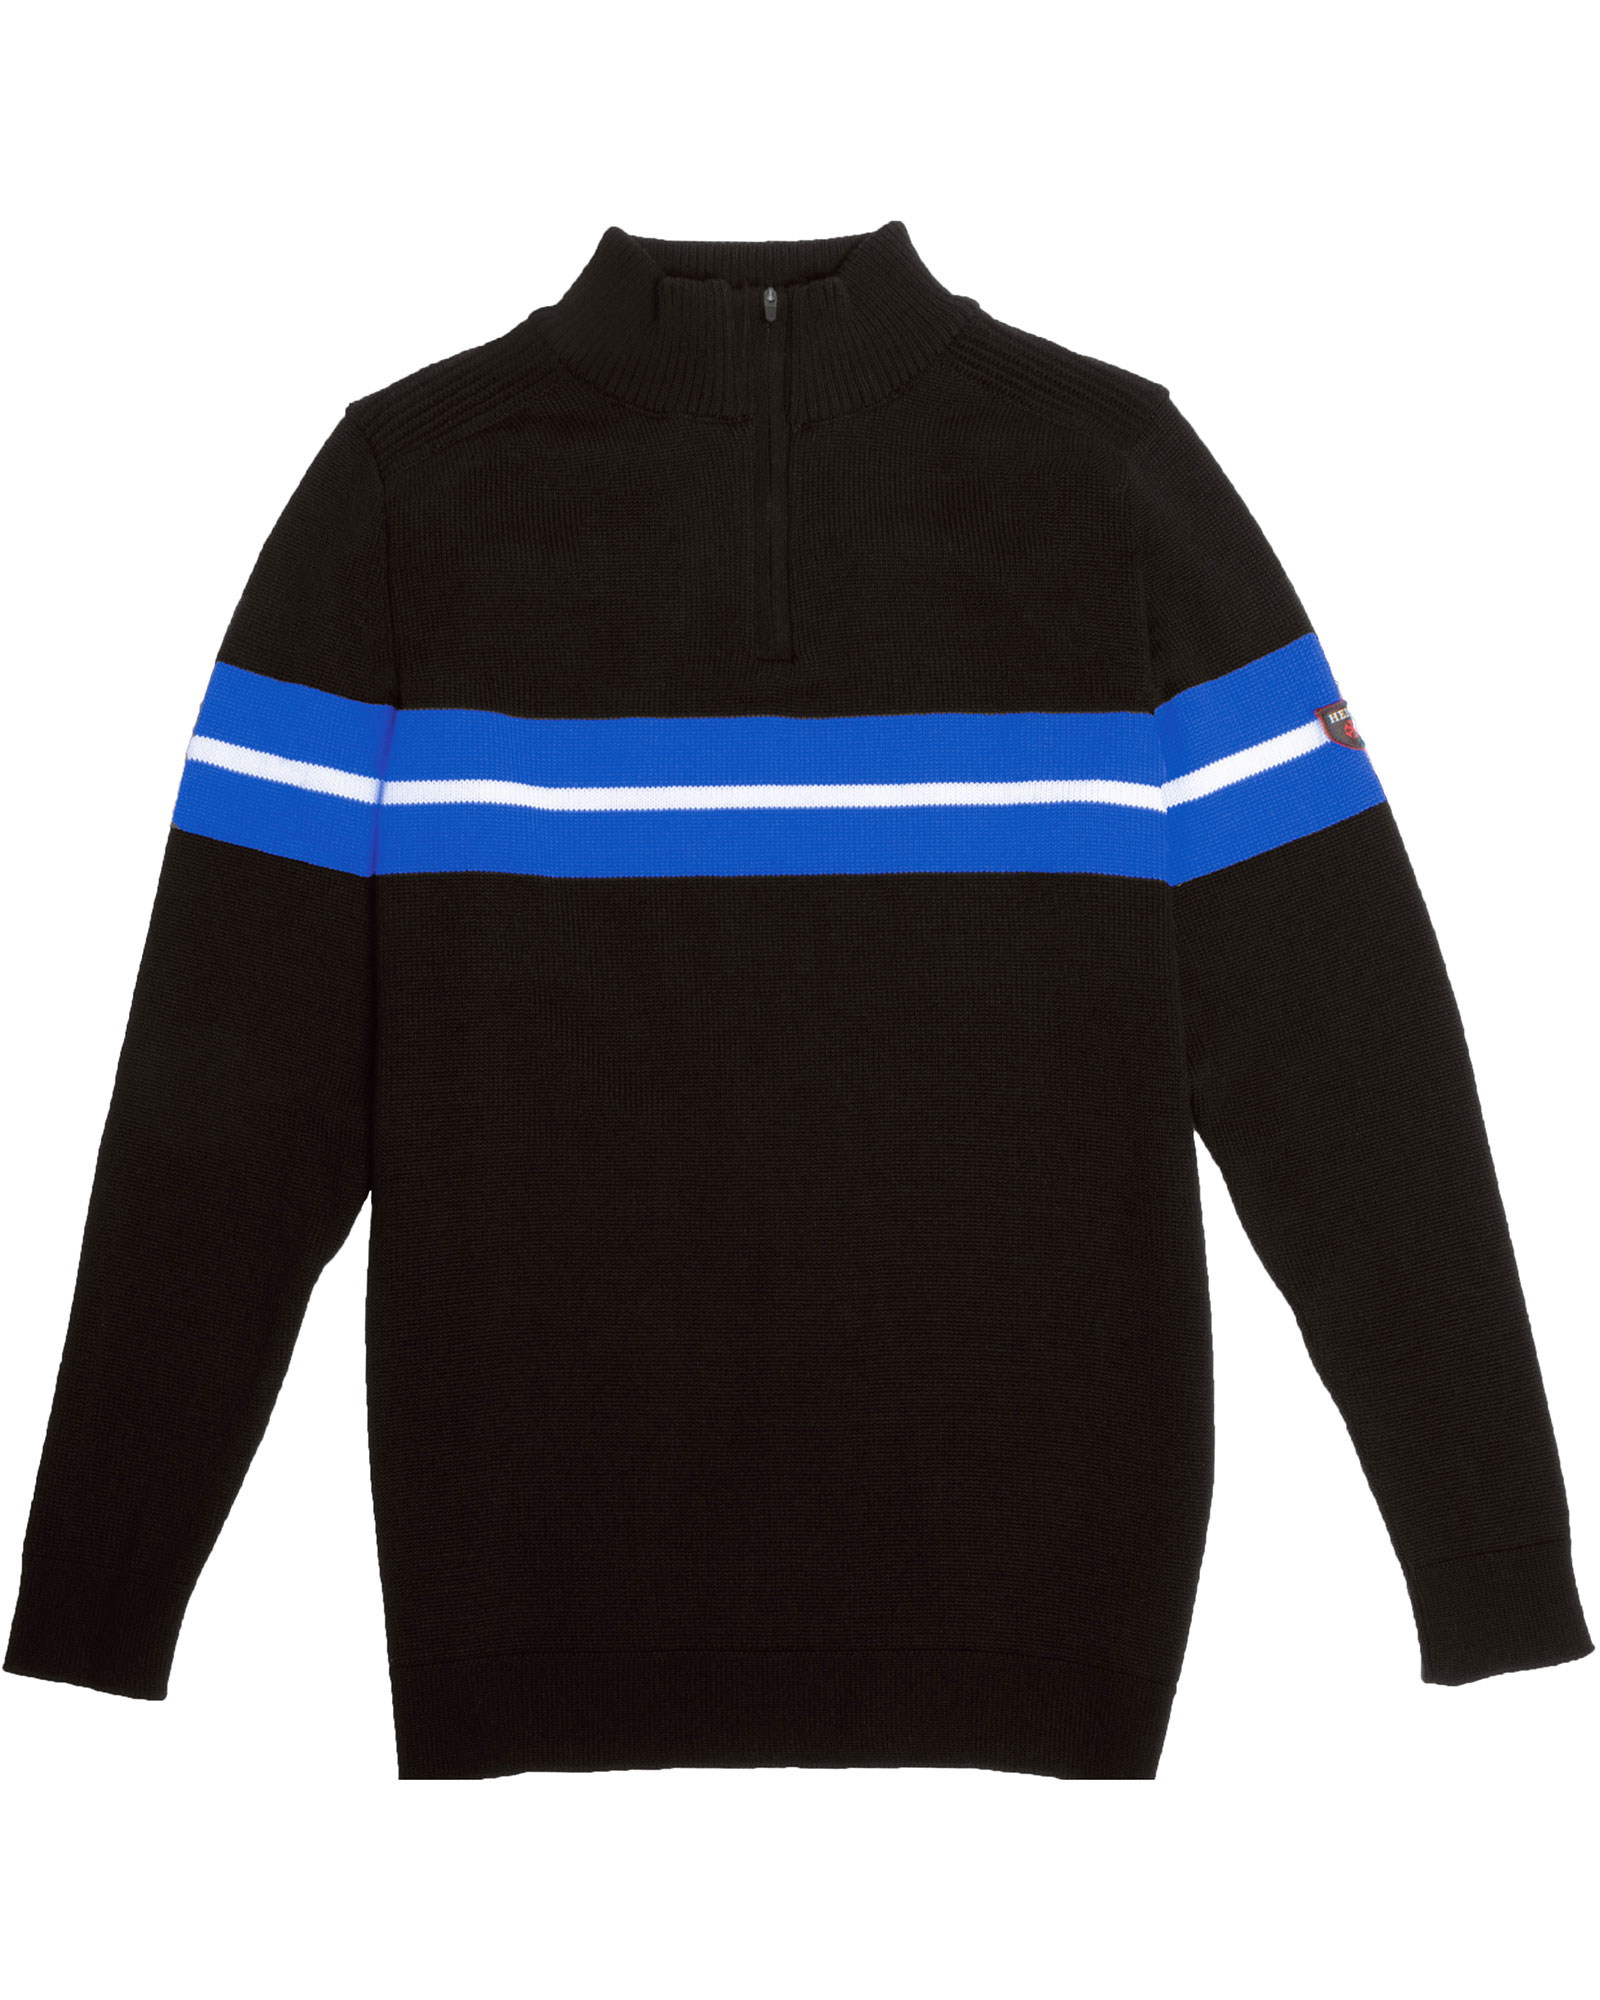 Product image of Henjl Carve Half Zip Men's Sweater